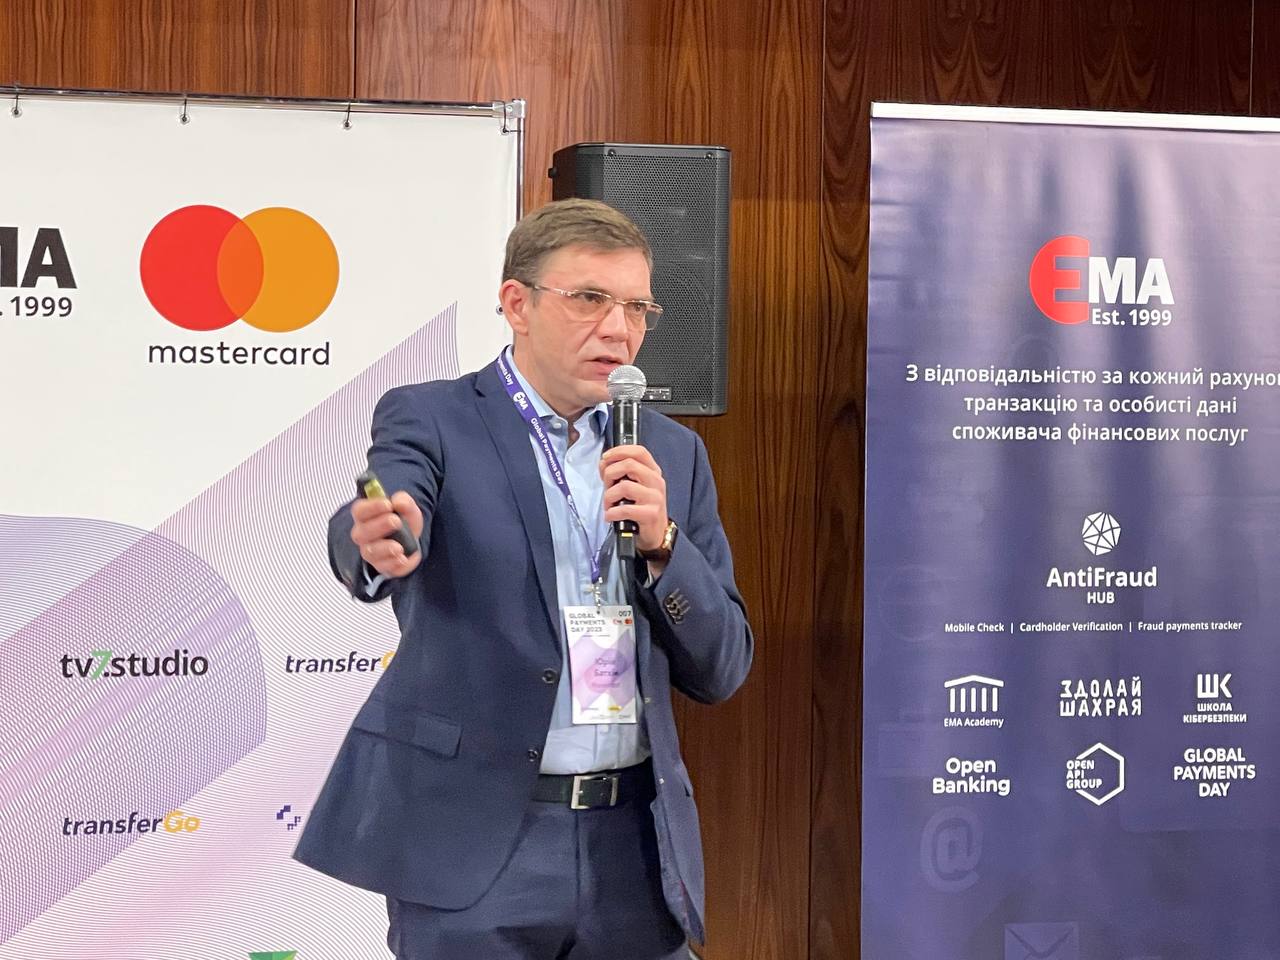 Юрій Батхін, віцепрезидент з розвитку бізнесу Mastercard в Україні та Молдові